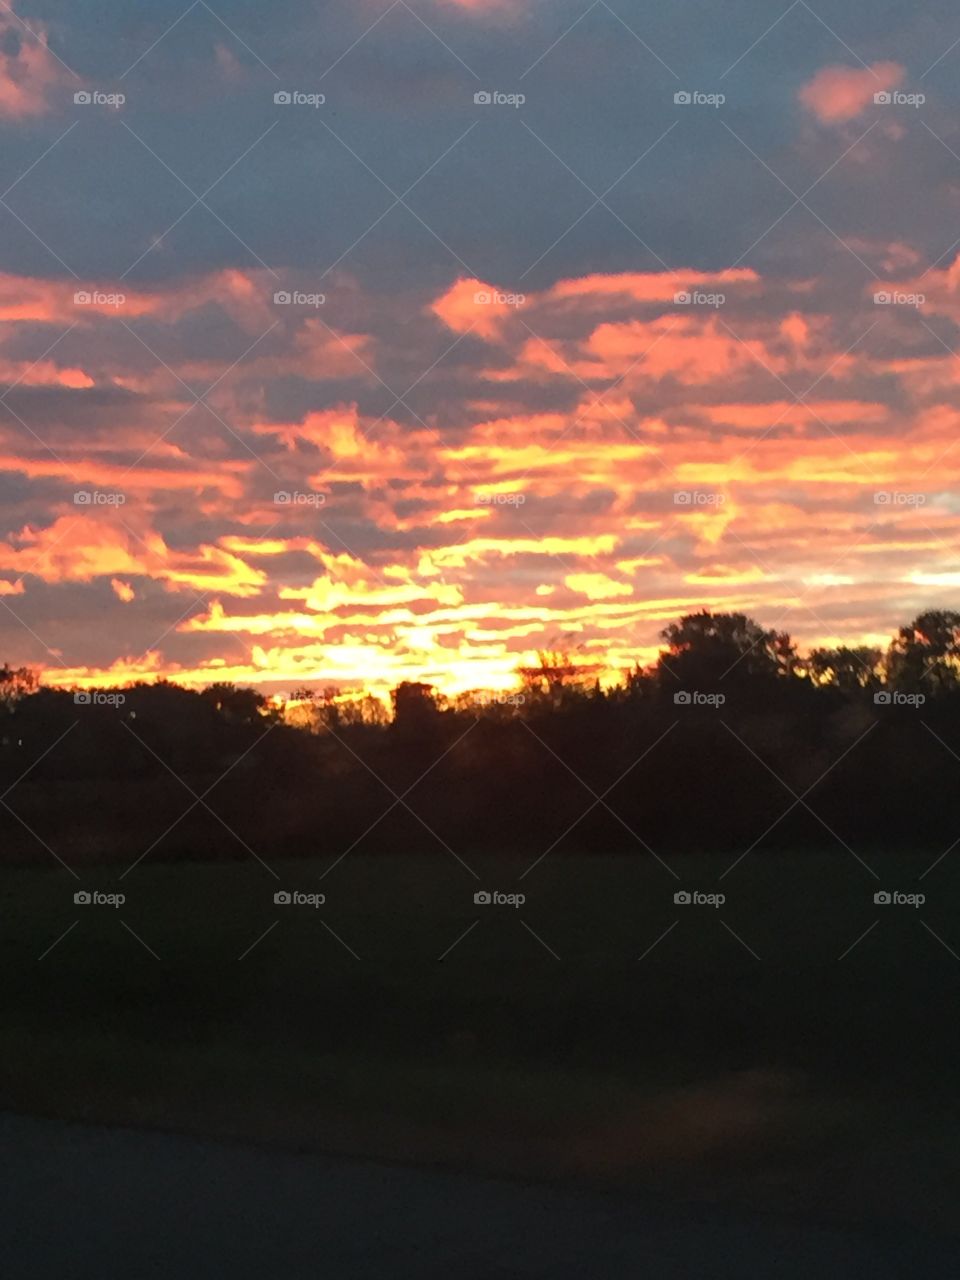 Indiana Sunrise